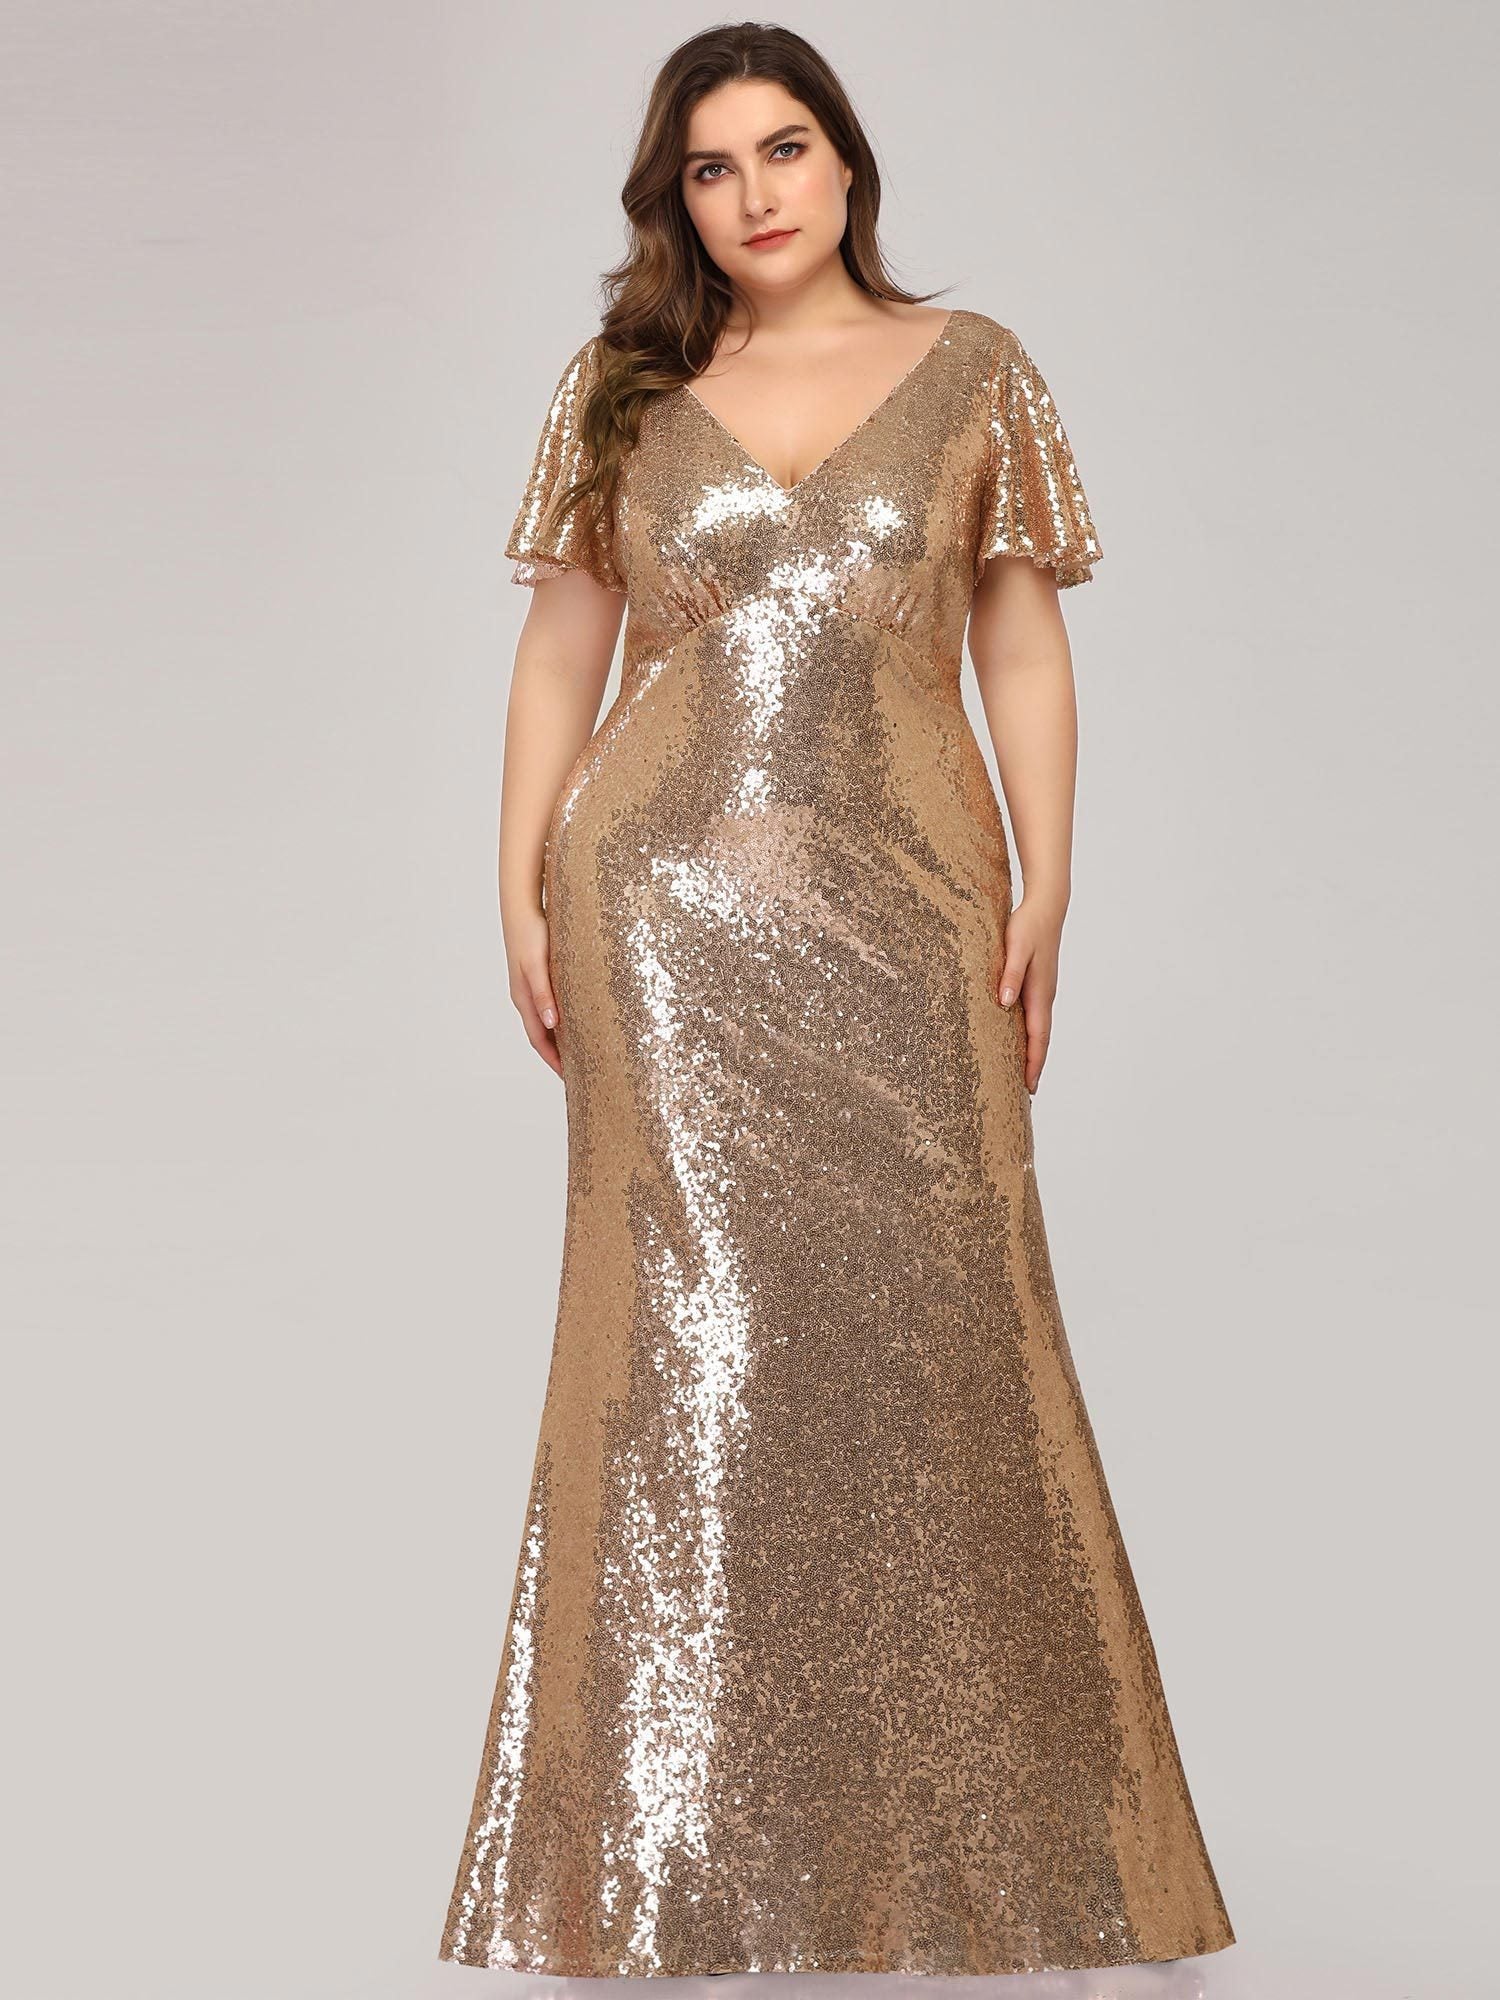 rose gold glitter dress short